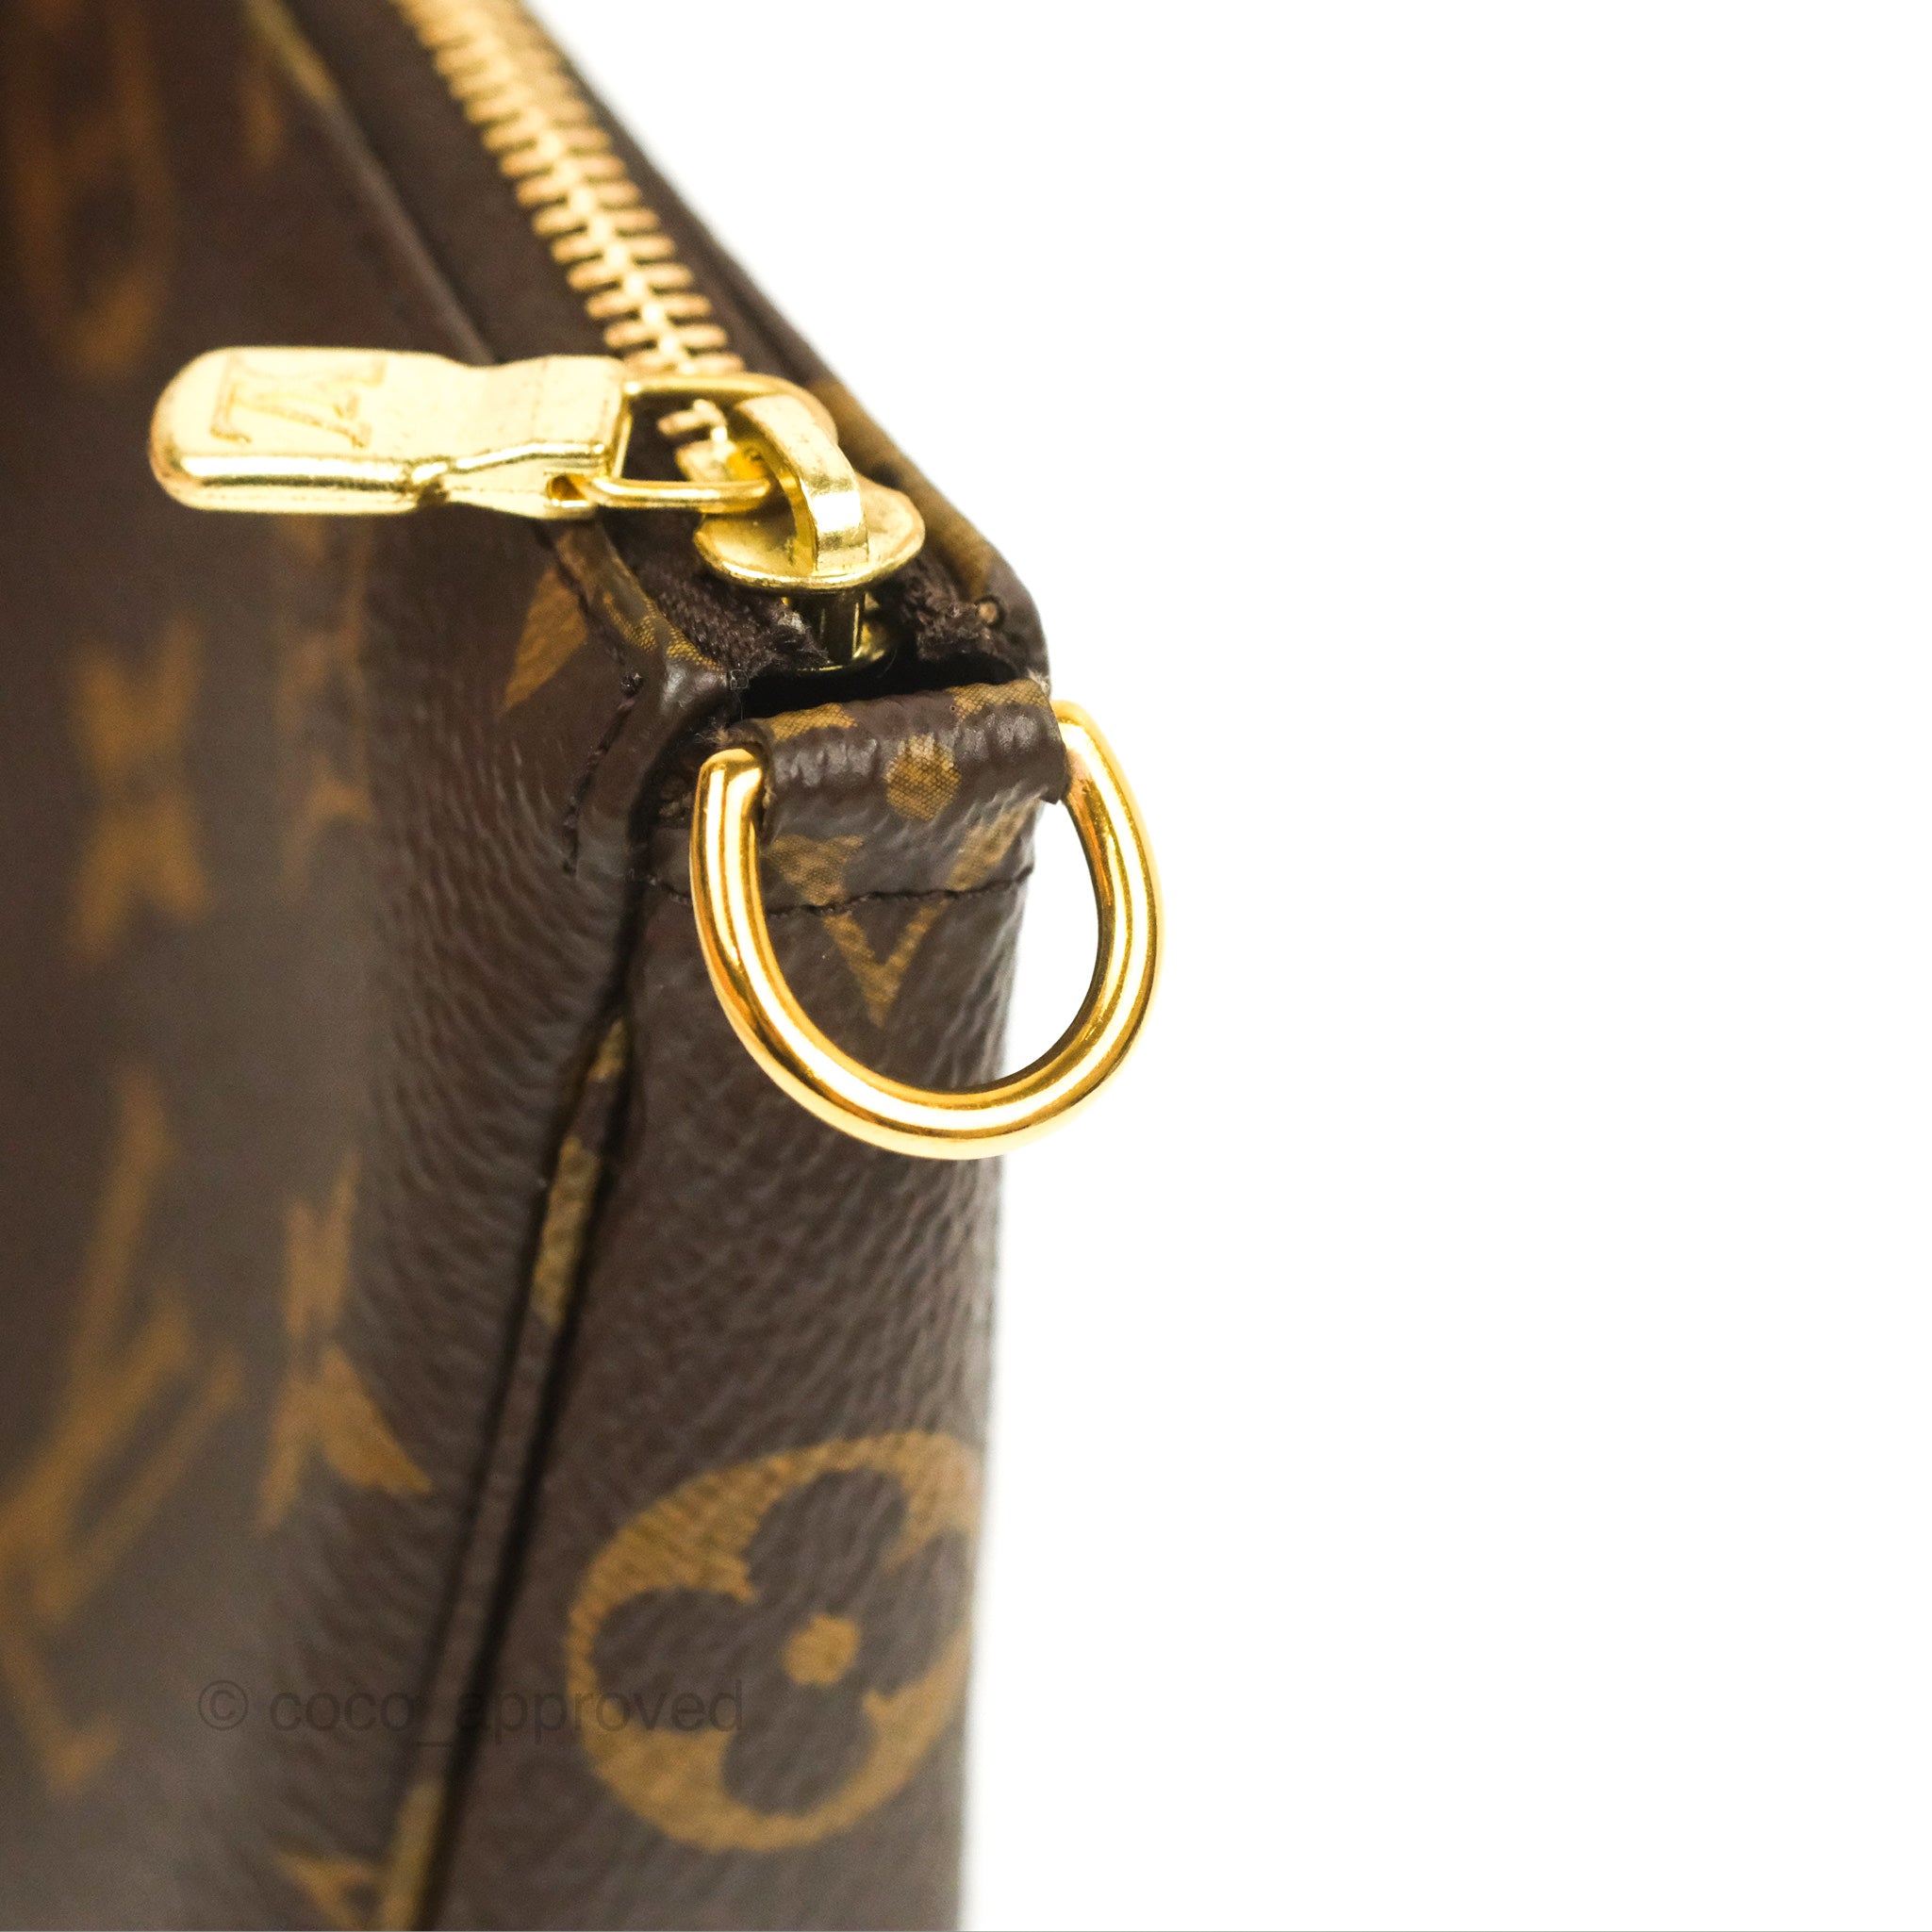 Louis Vuitton Monogram Canvas Mini Pochette Accessories – Coco Approved  Studio